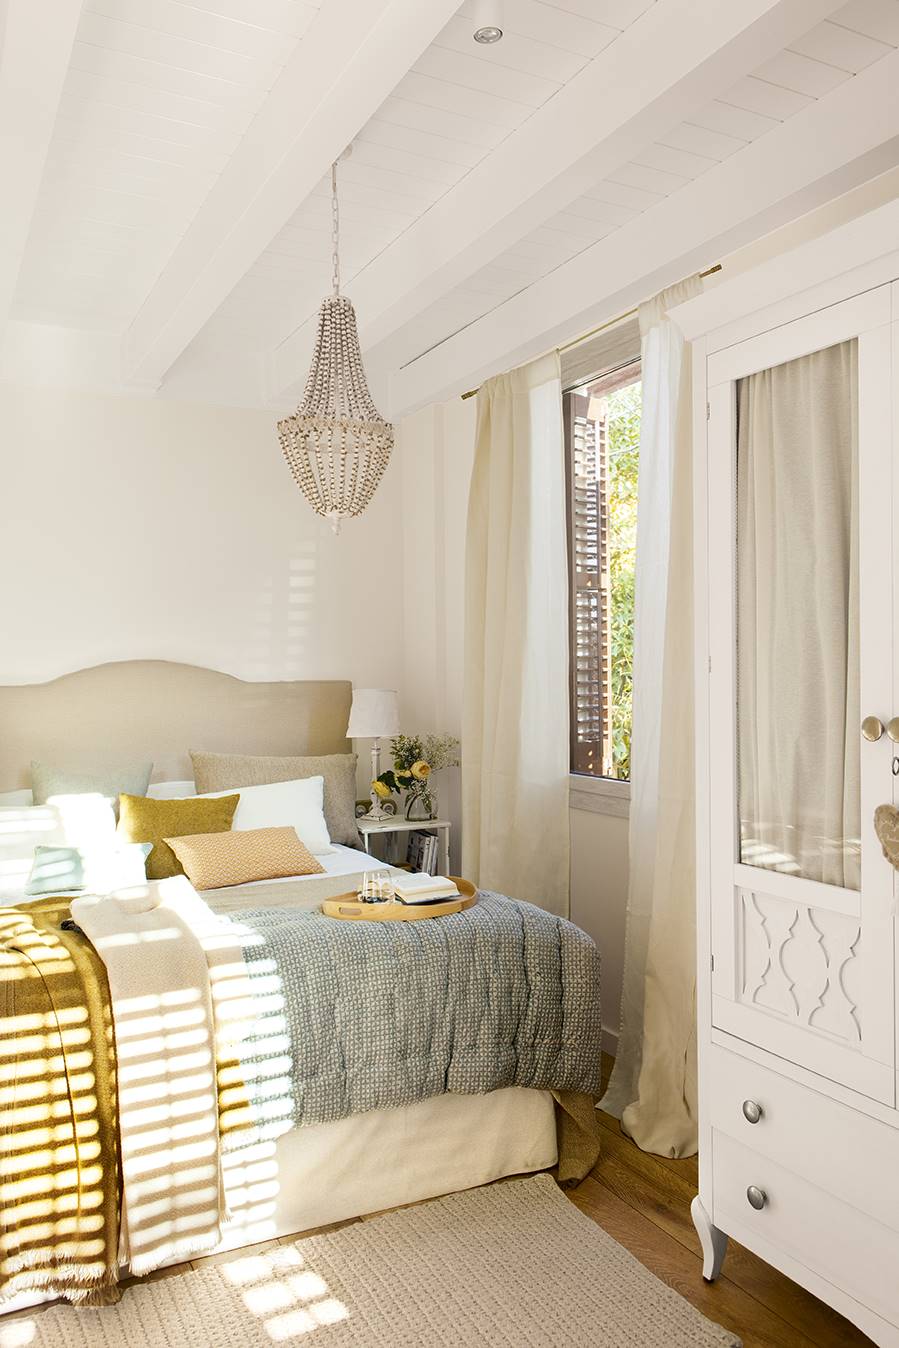 Dormitorio pequeño con techo de vigas en blanco, armario clásico y ropa de cama